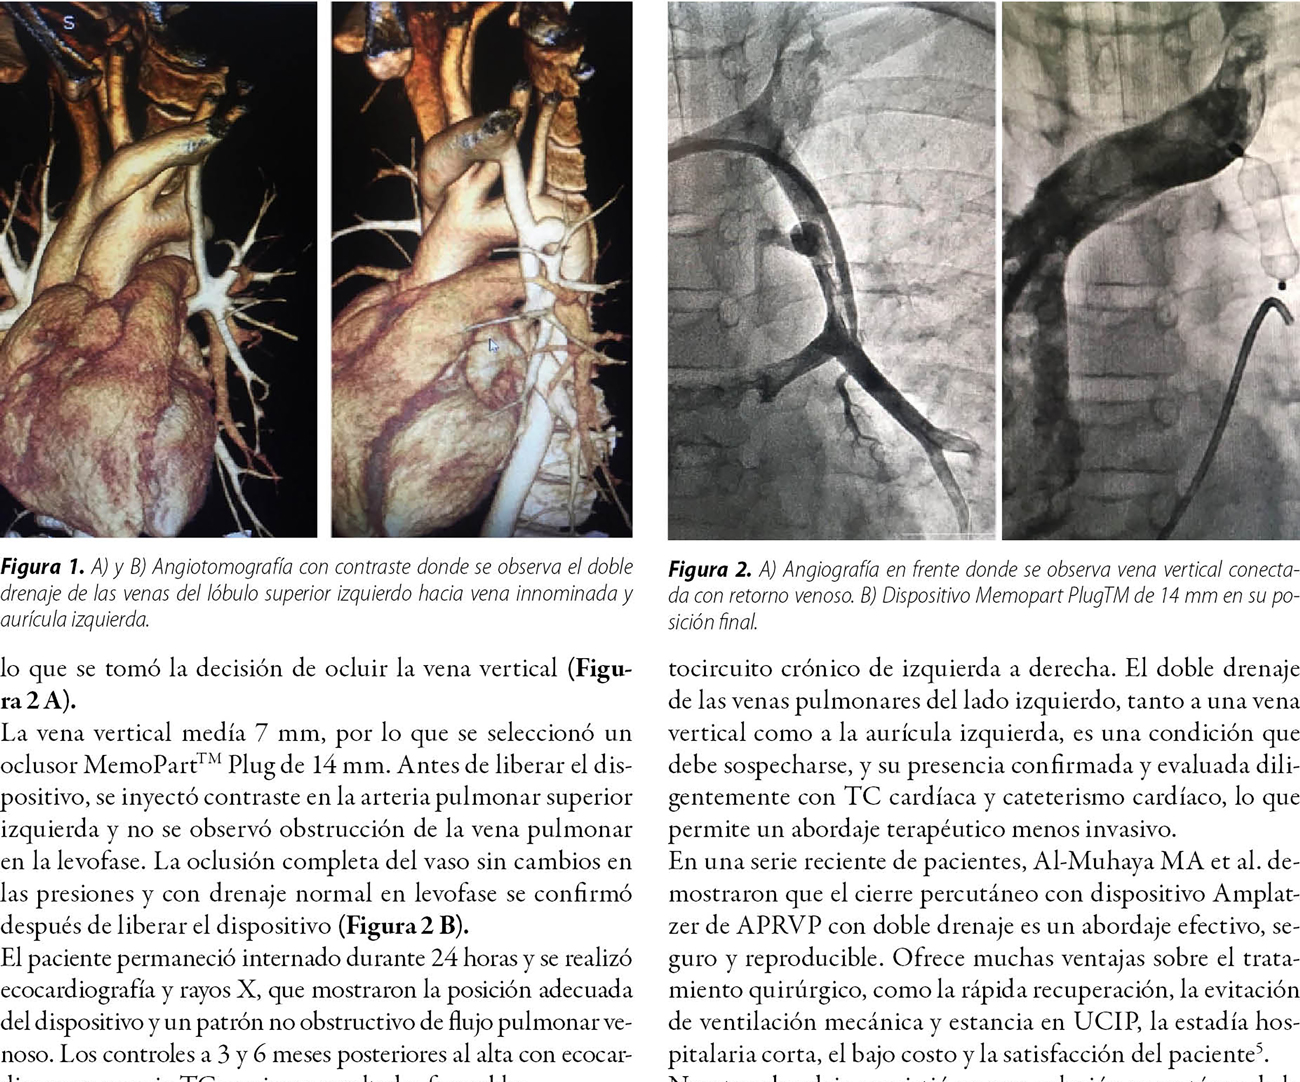 Resolución percutánea de anomalía parcial del retorno venoso pulmonar izquierdo con doble drenaje  en paciente pediátrico. Reporte de caso